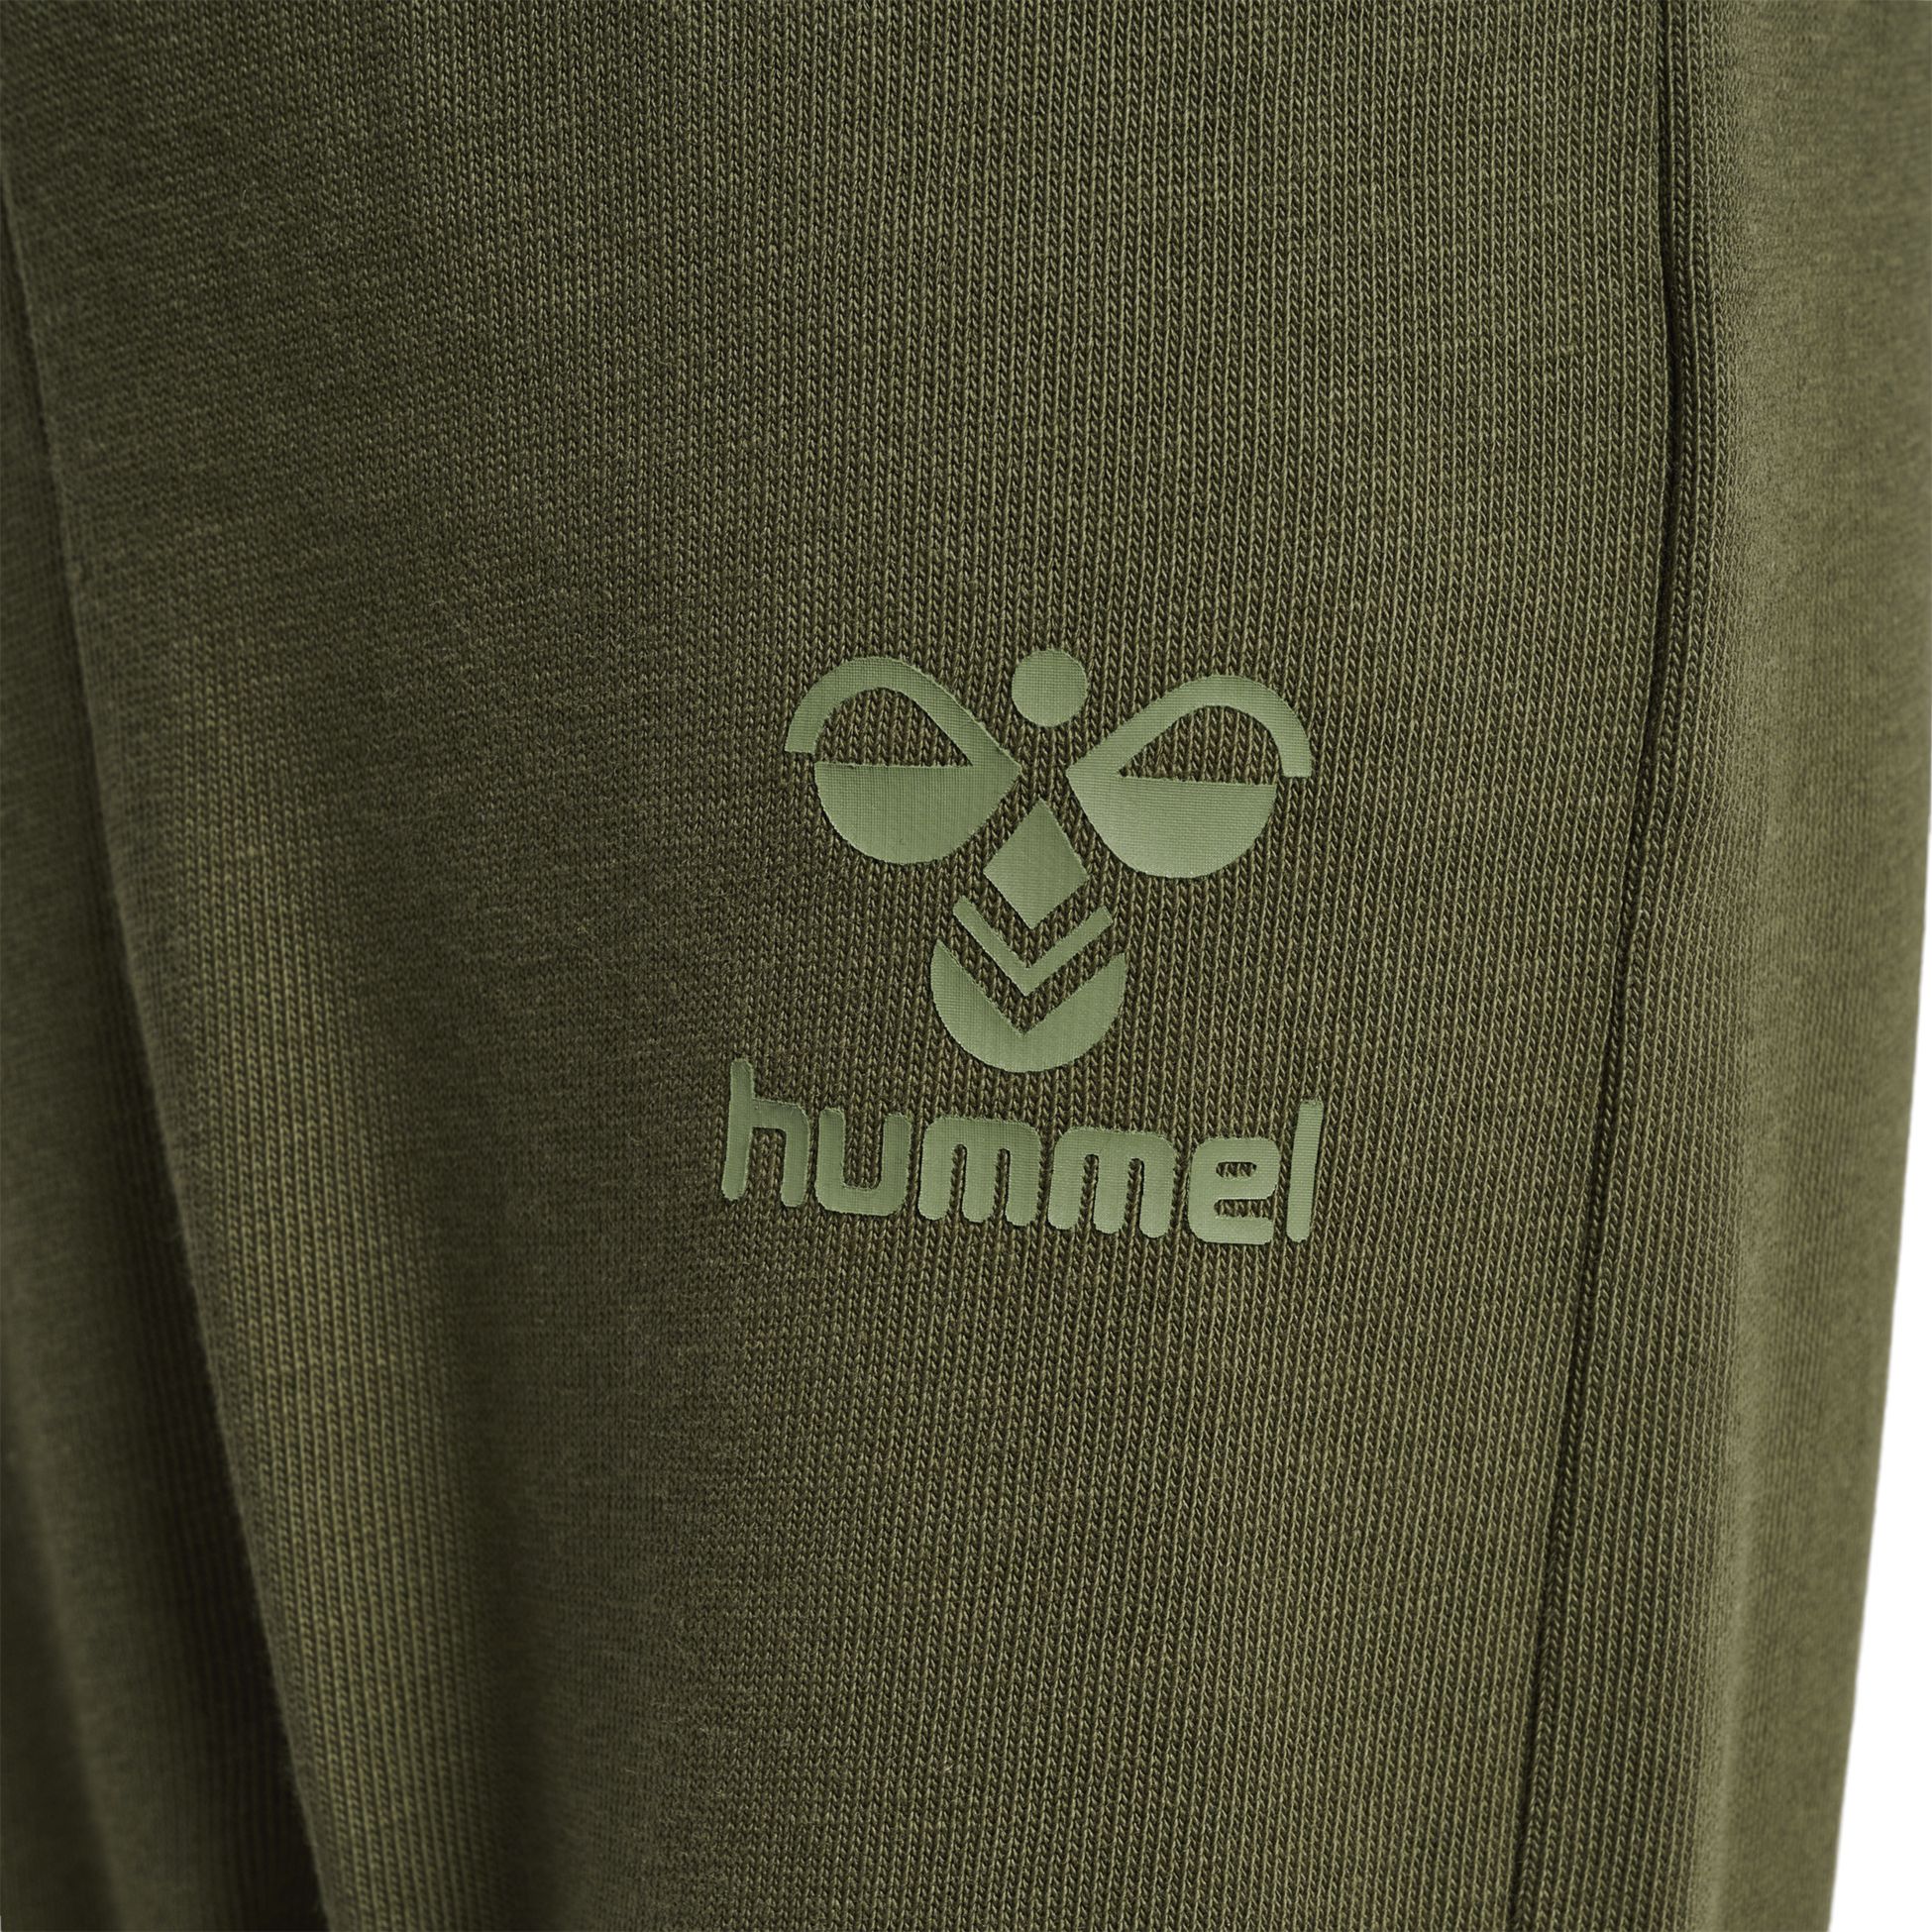 HUMMEL, K hmlARINE CREWSUIT